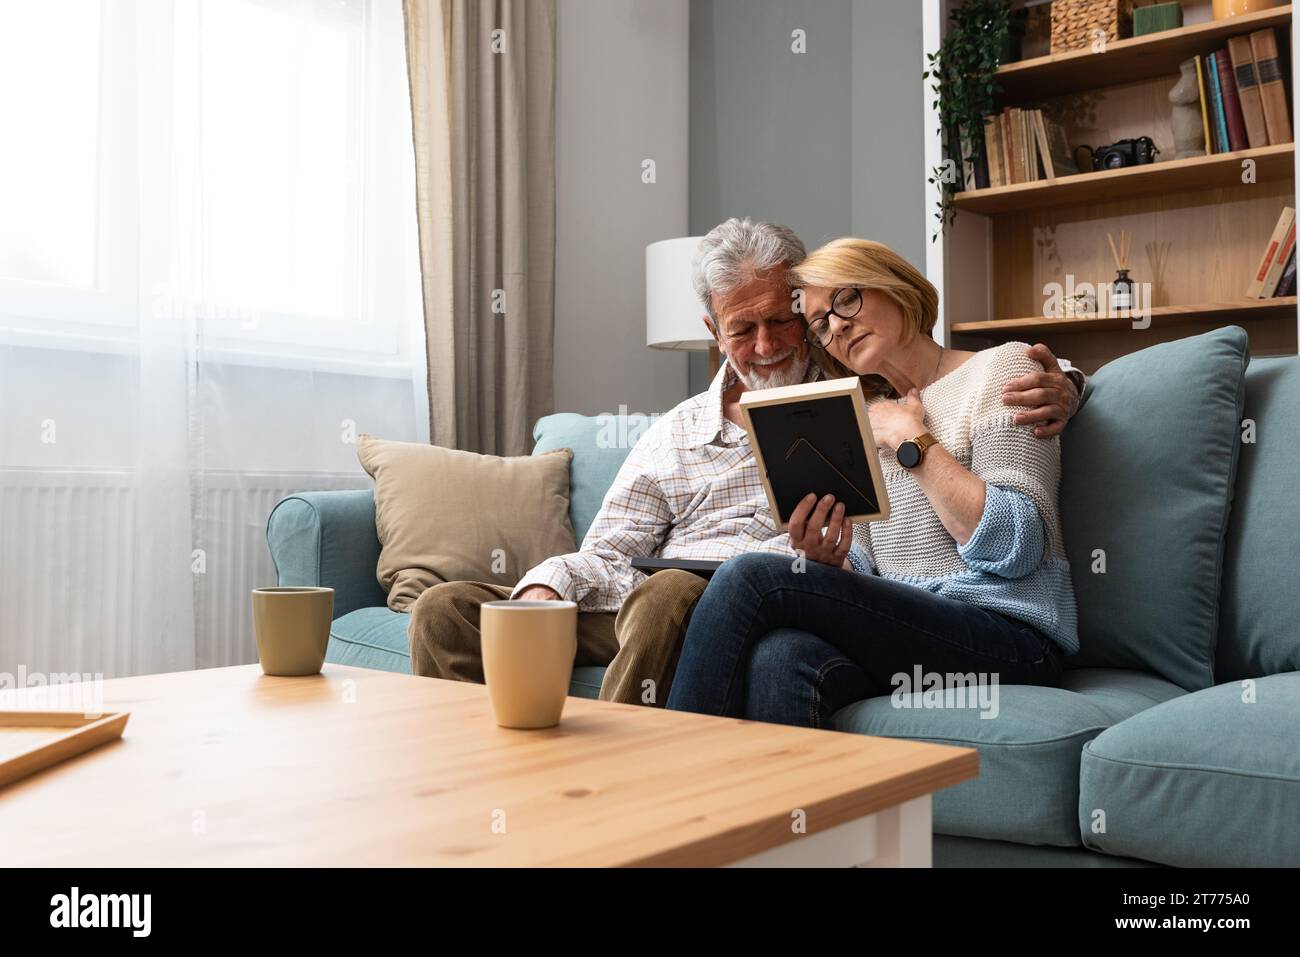 Zwei ältere Leute, ein älteres Paar, Mann und Frau, die ein Familienfoto ansehen, lächeln und umarmen, während sie zu Hause auf dem Sofa sitzen. Erinnerungen und Nostalgie für das Kind Stockfoto